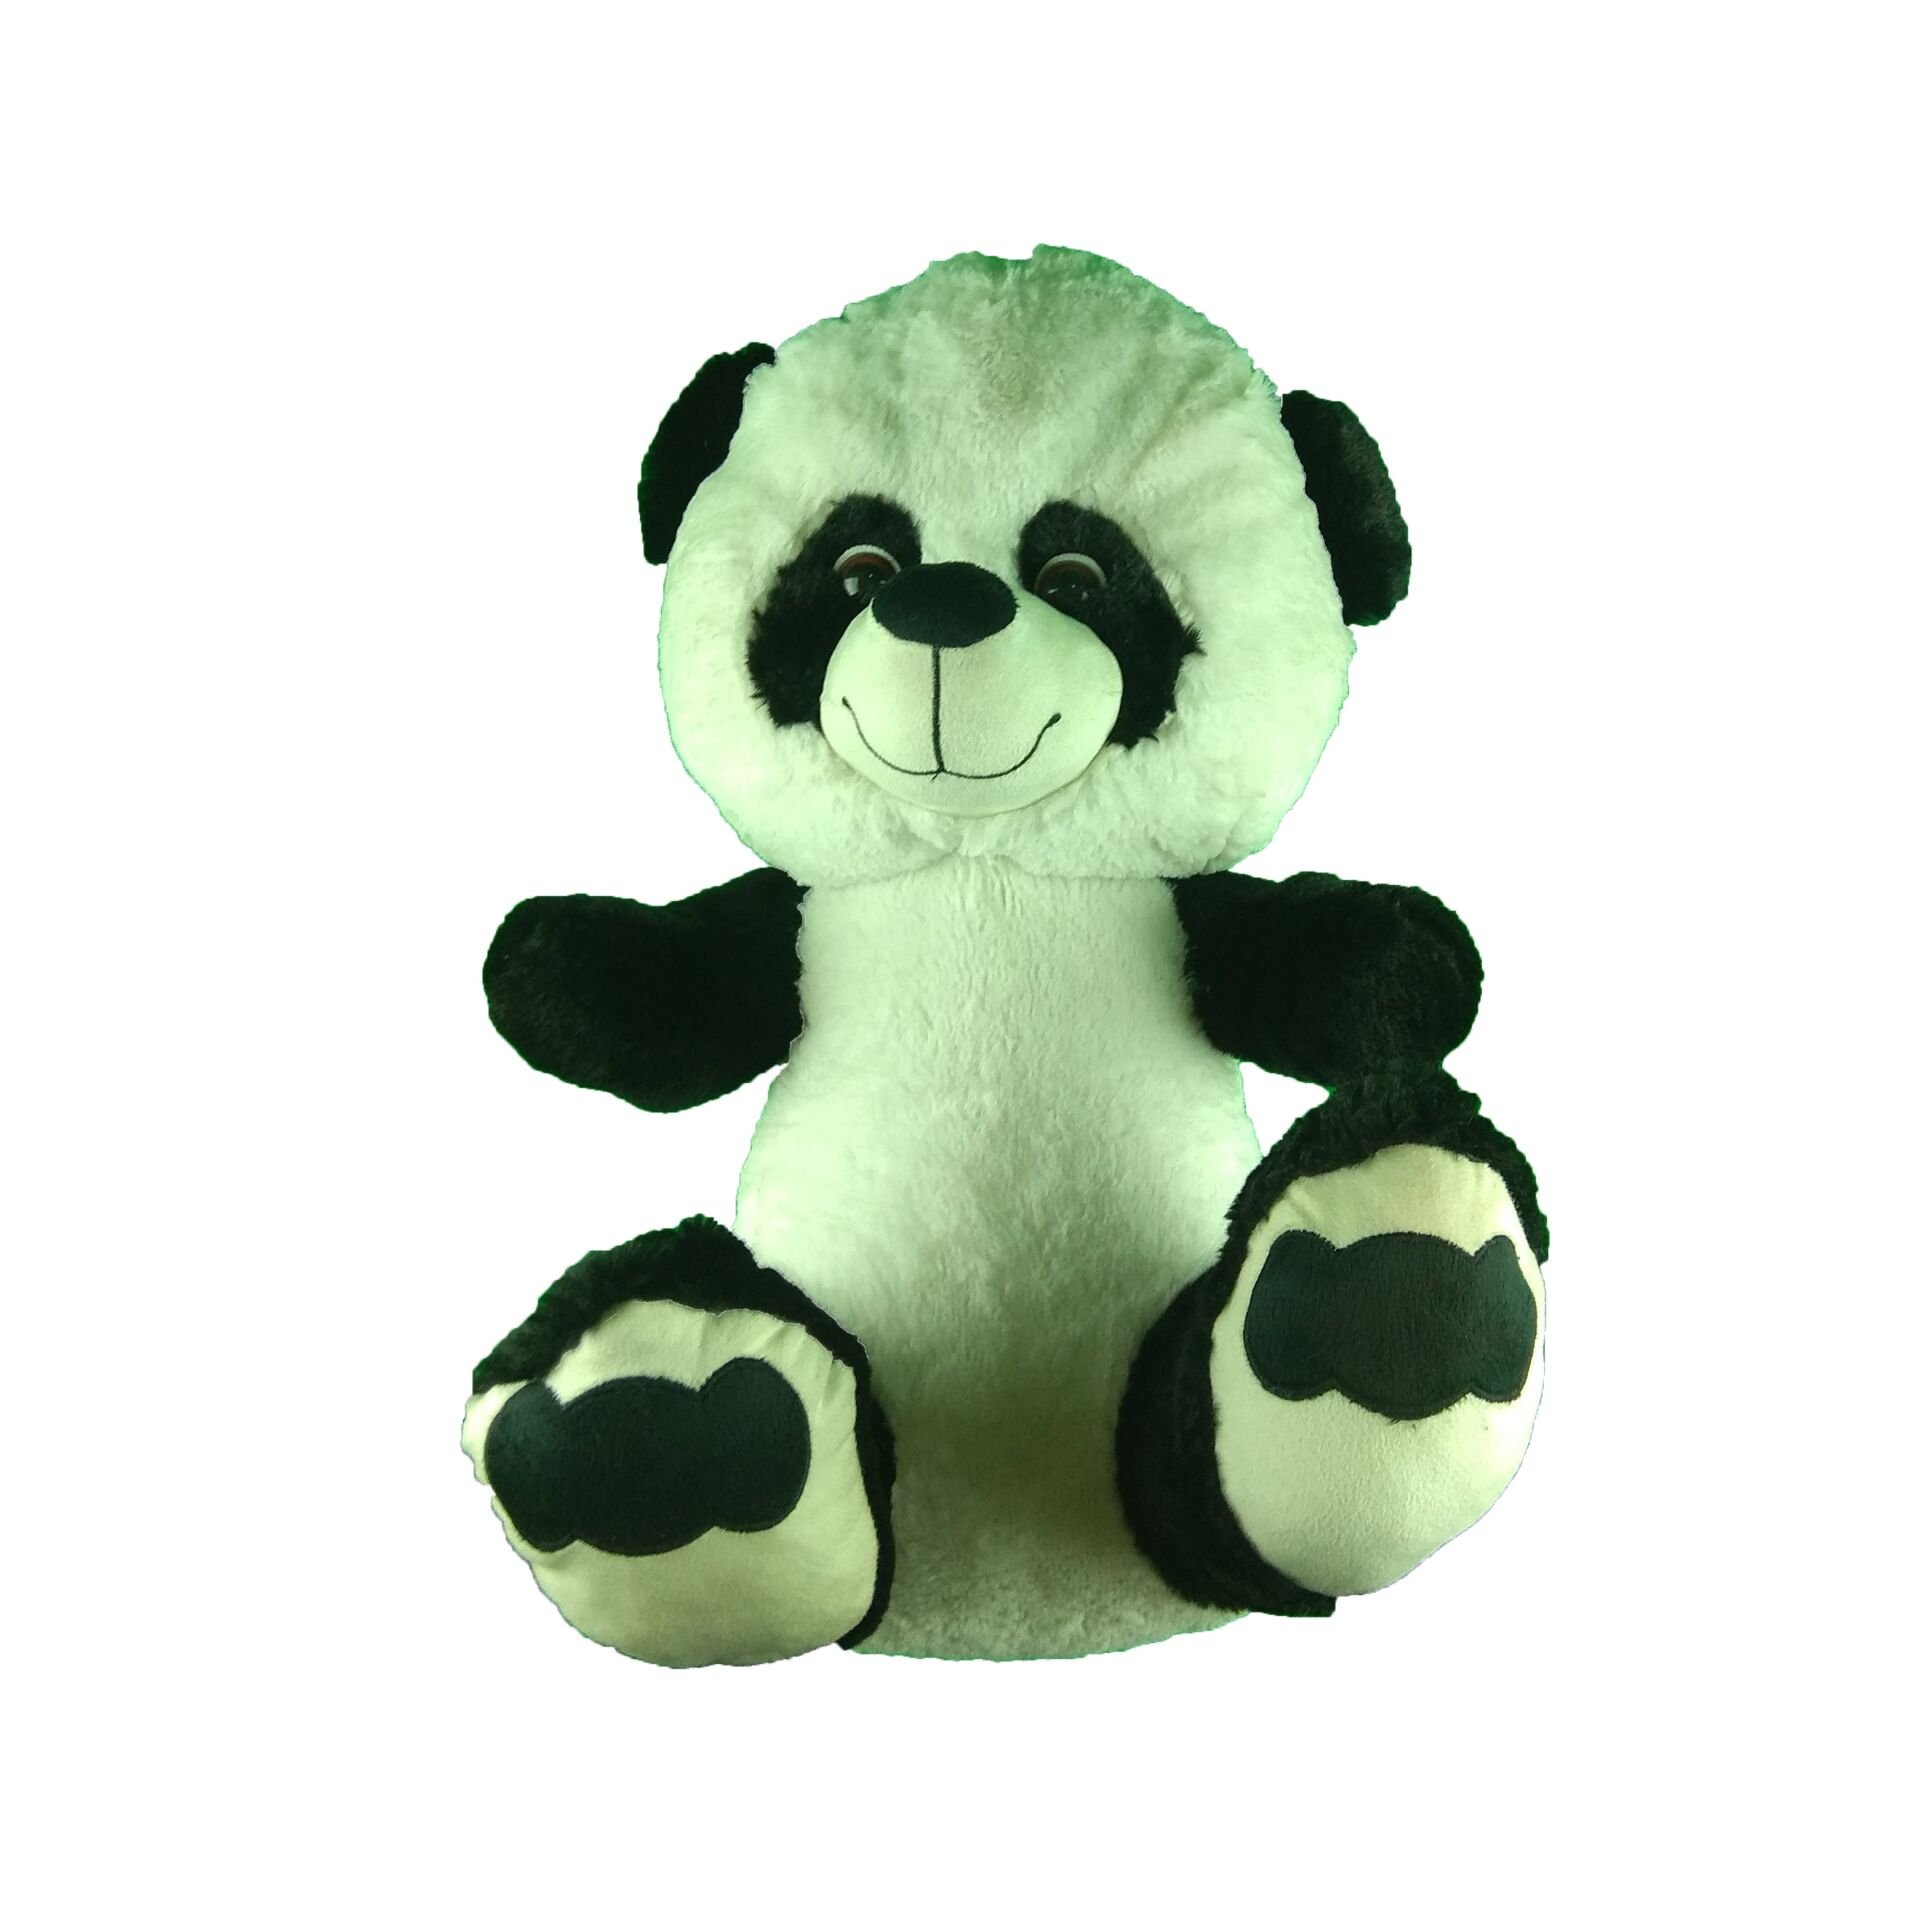 Oturakçı Toys Peluş 55 Cm Küçük Panda 03020